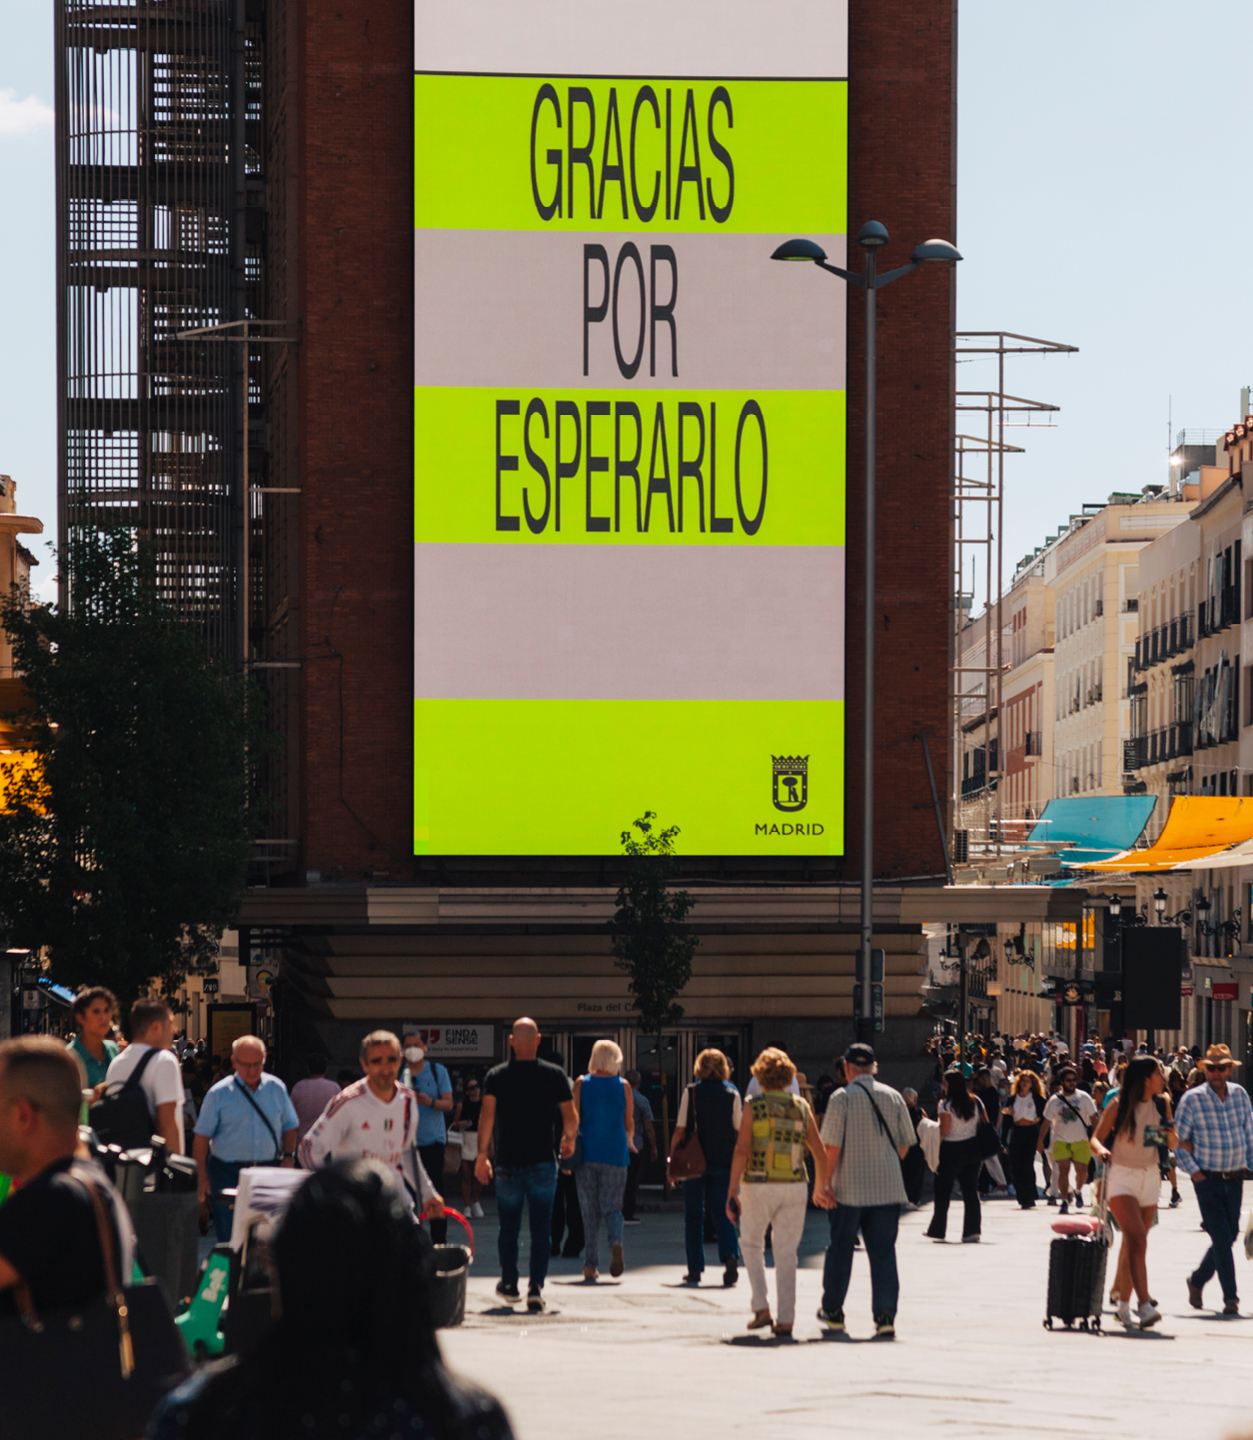 Atipus | Estudi disseny gràfic - Barcelona